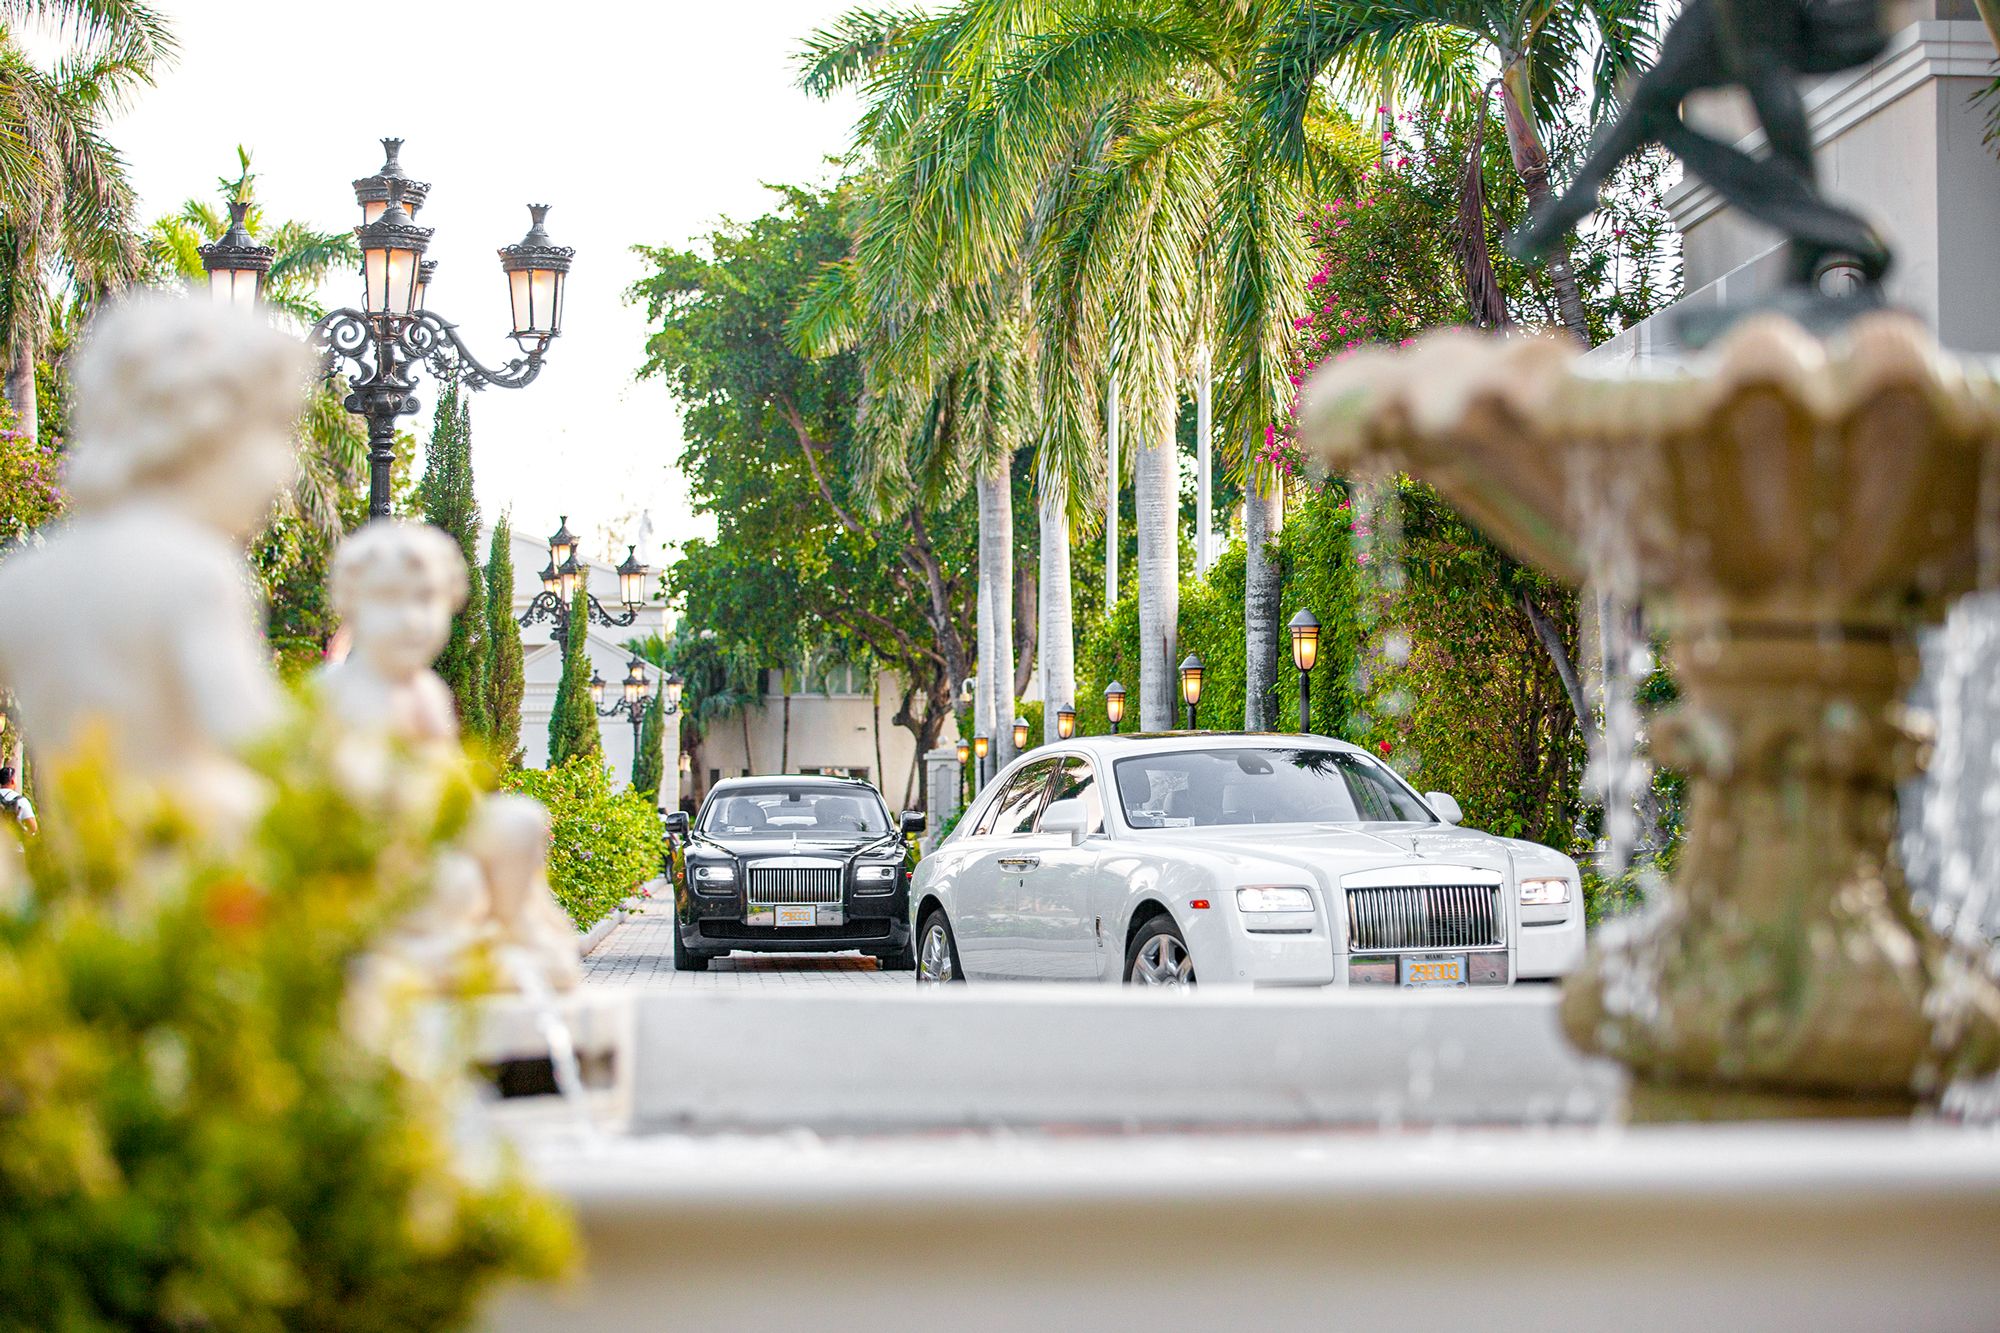 Sandals-Royal-Bahamian-Cars-Entrance